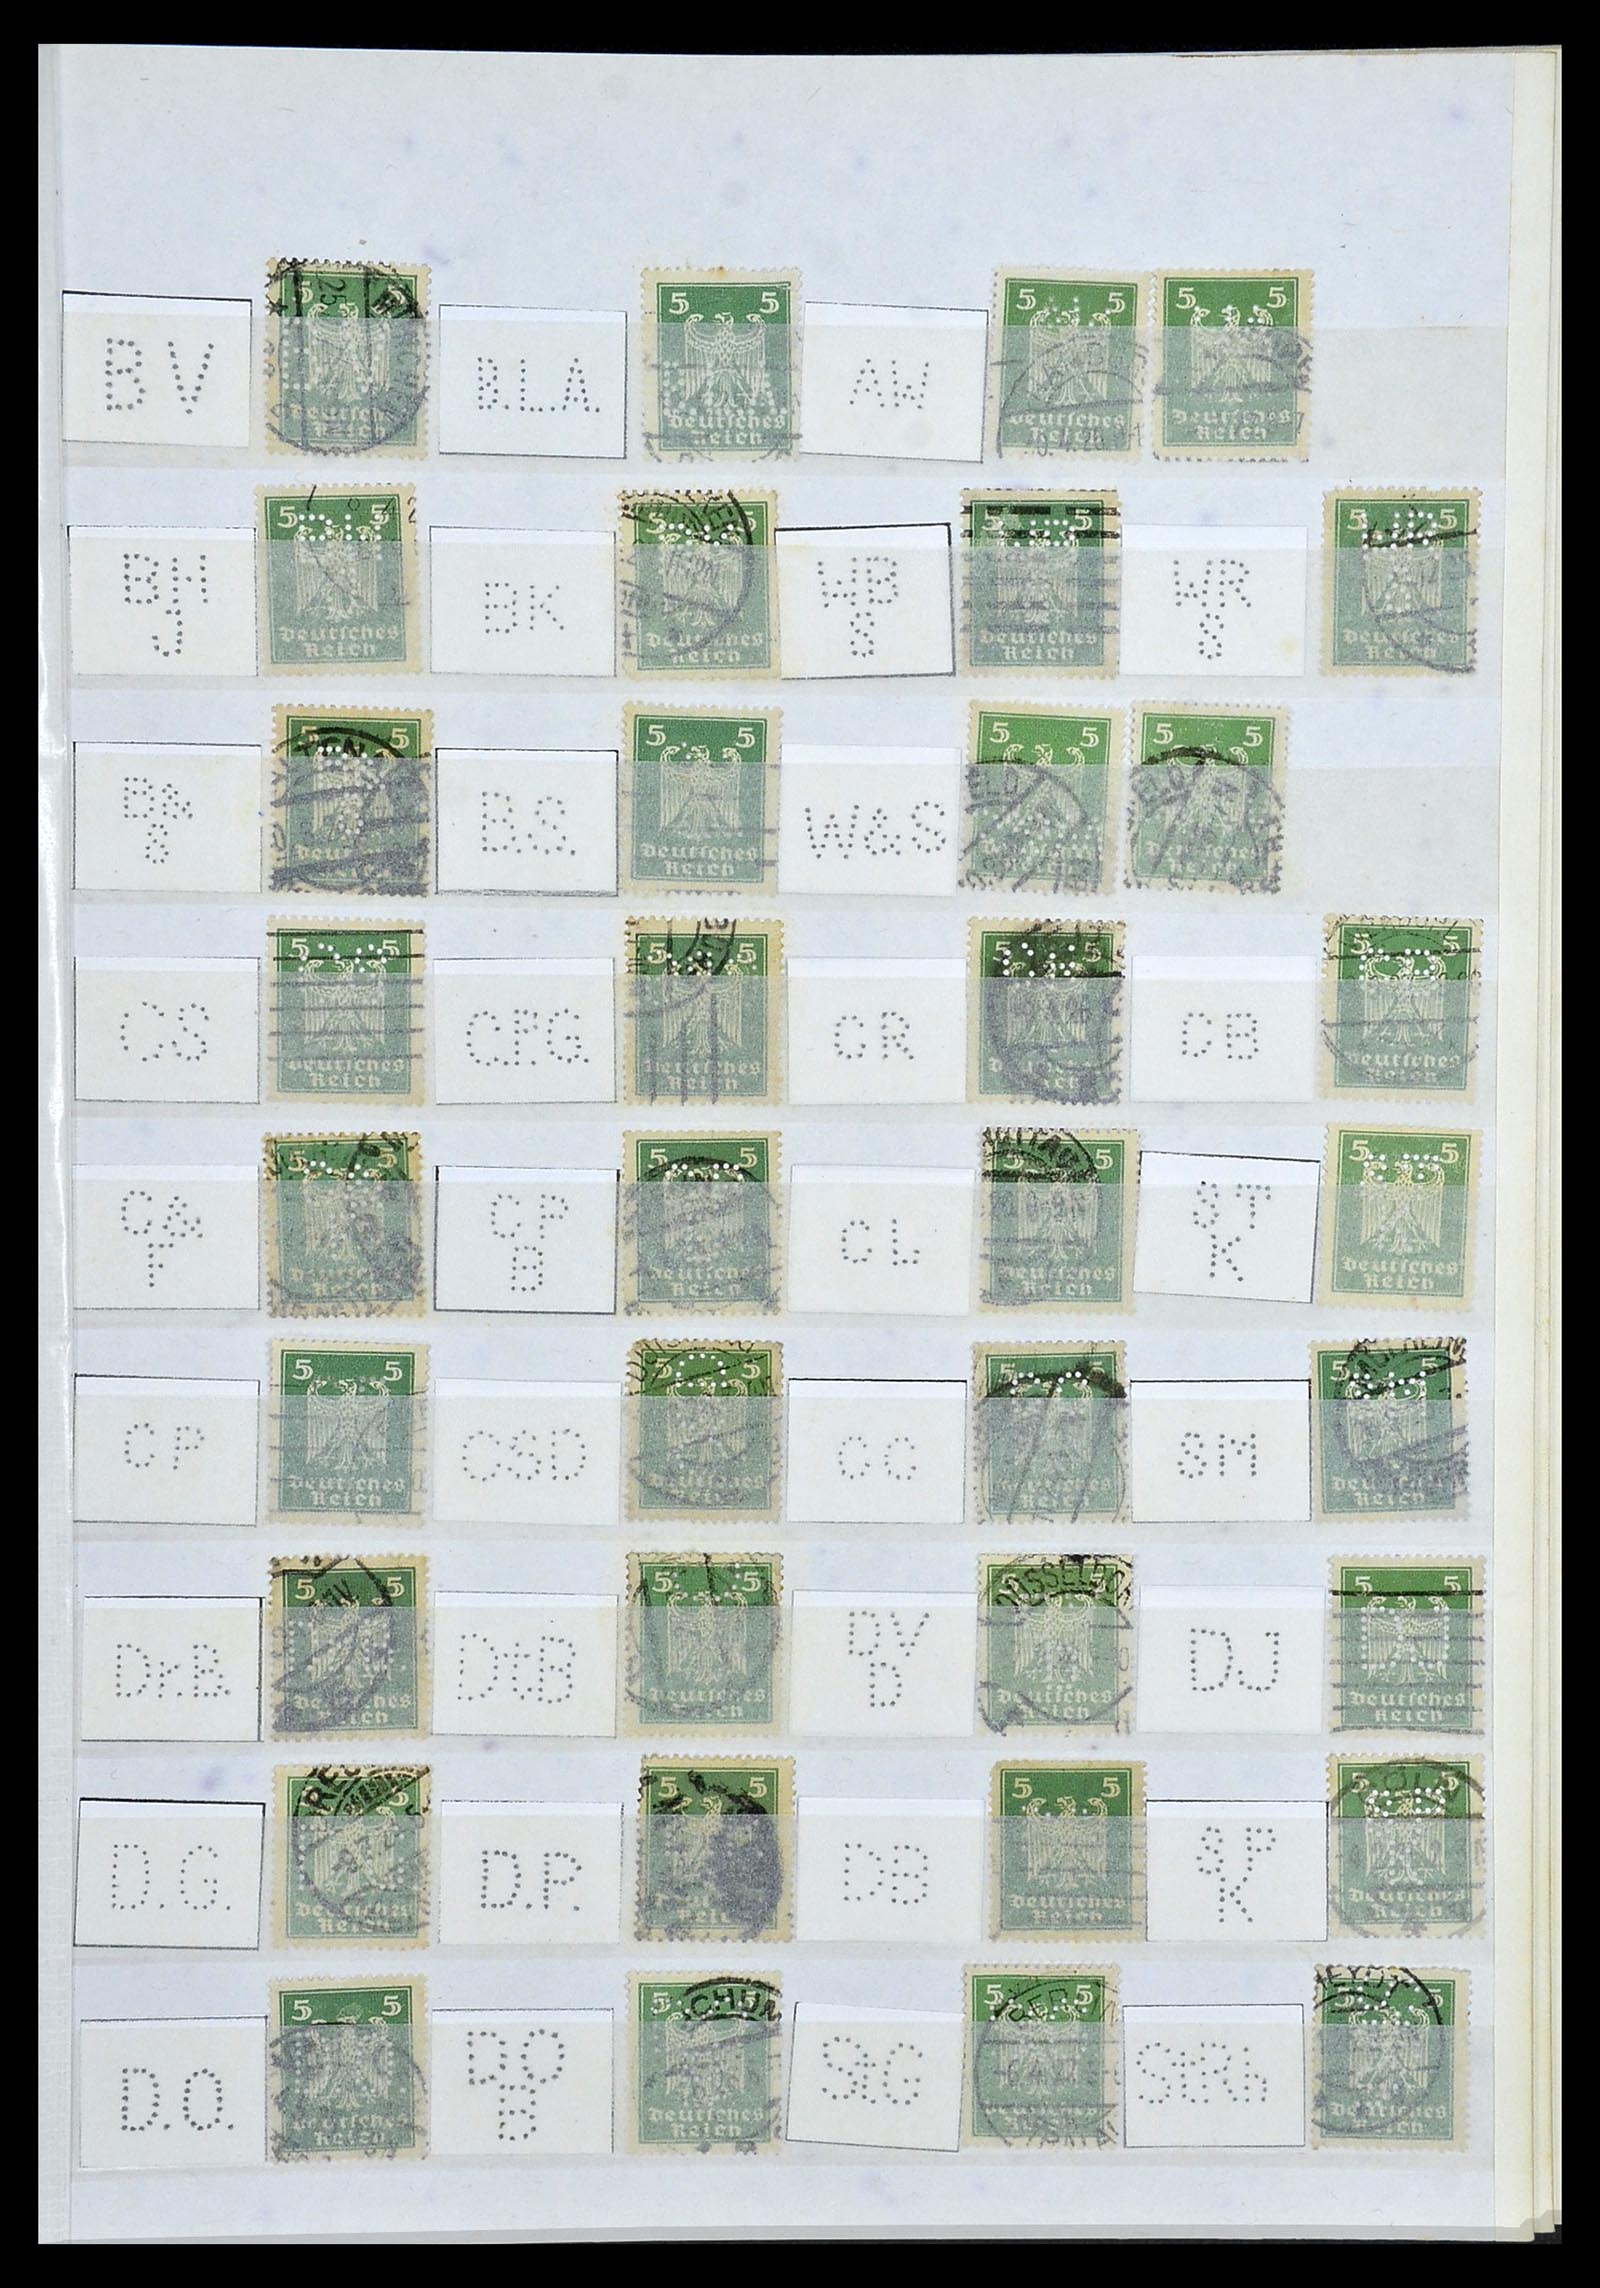 34071 017 - Stamp collection 34071 German Reich perfins 1923-1930.